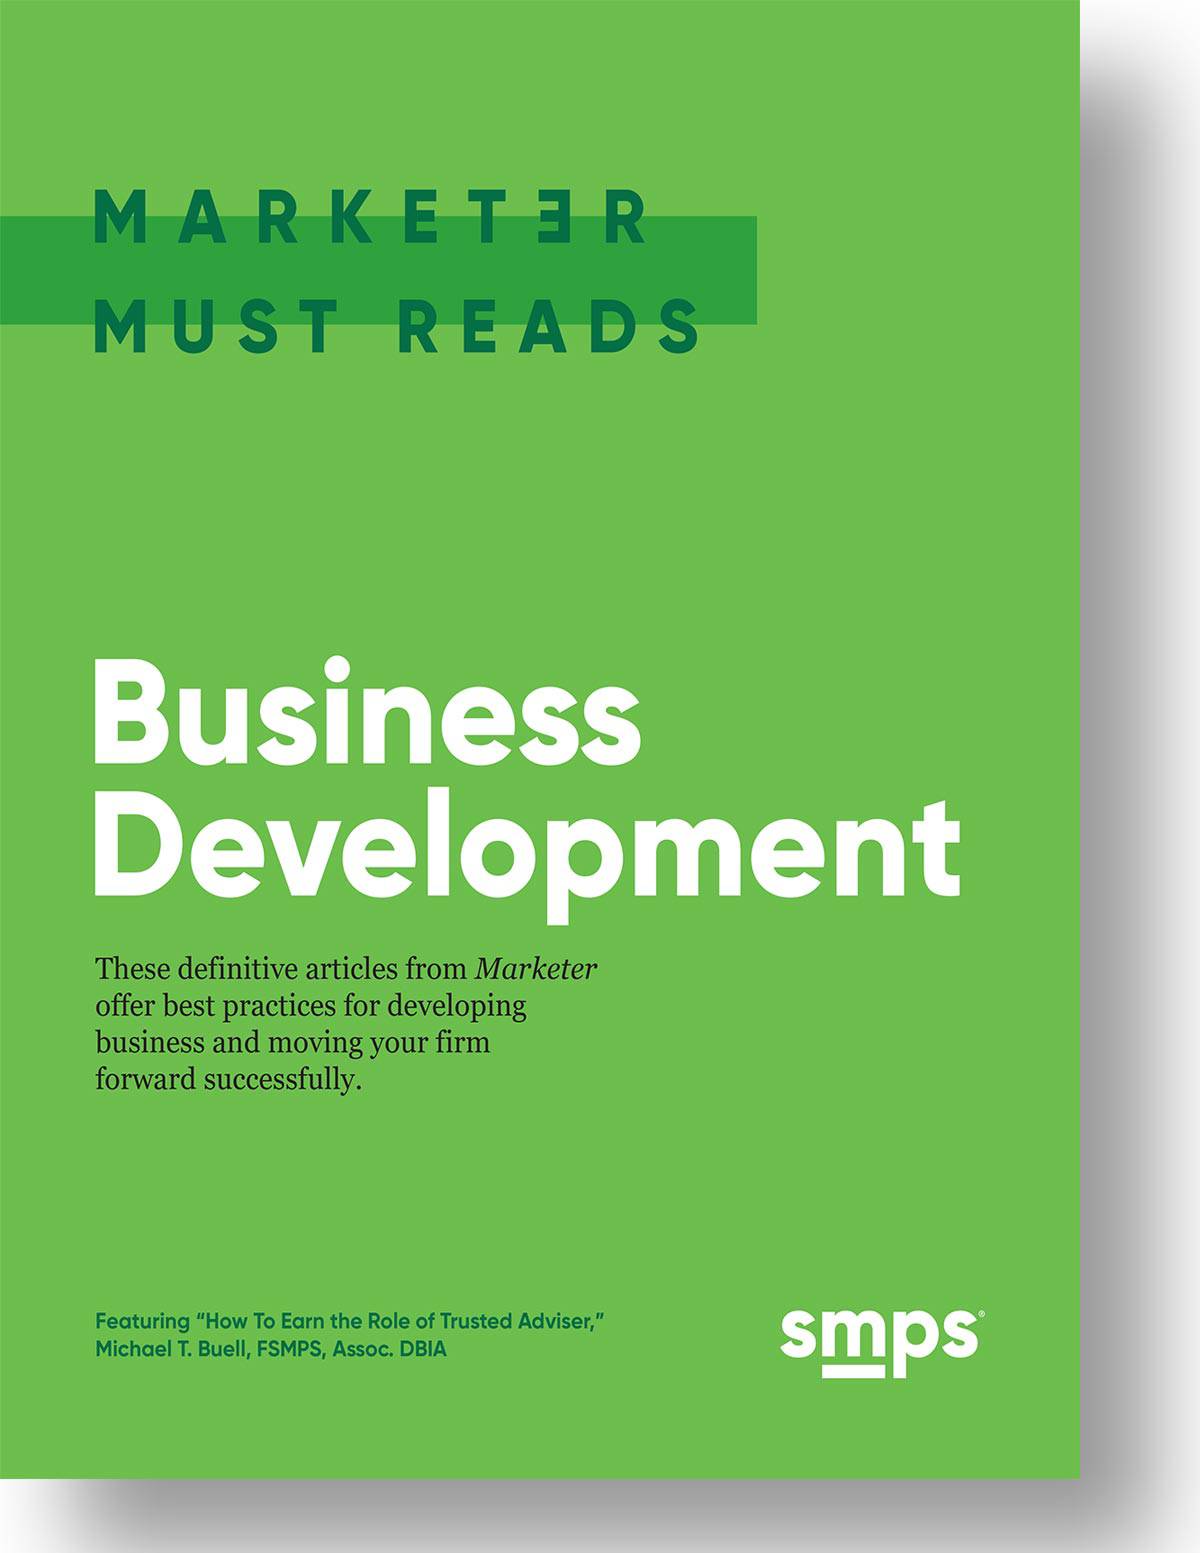 Marketer Must Reads: Business Development e-book